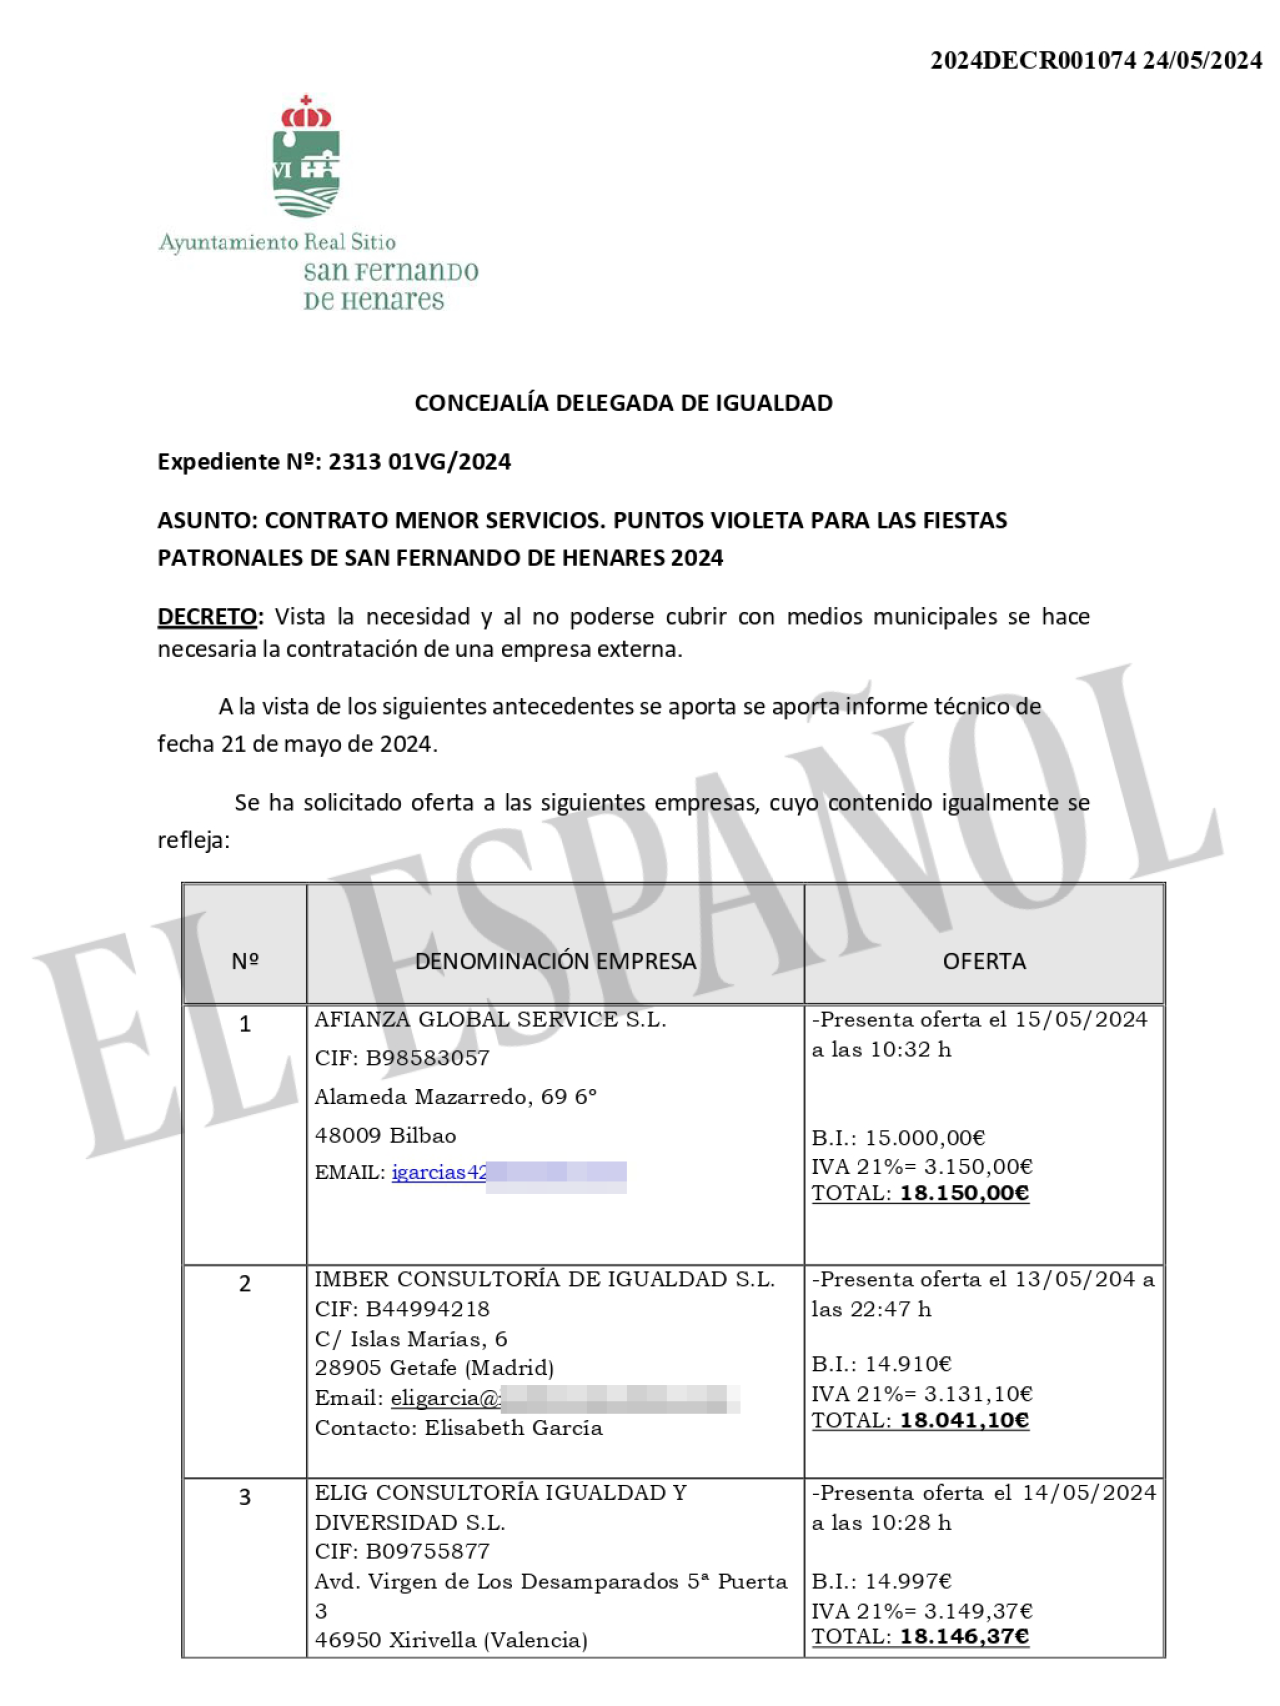 Contrato adjudicado a la directora del Instituto de la Mujer por el Ayuntamiento de San Fernando de Henares (Madrid)..